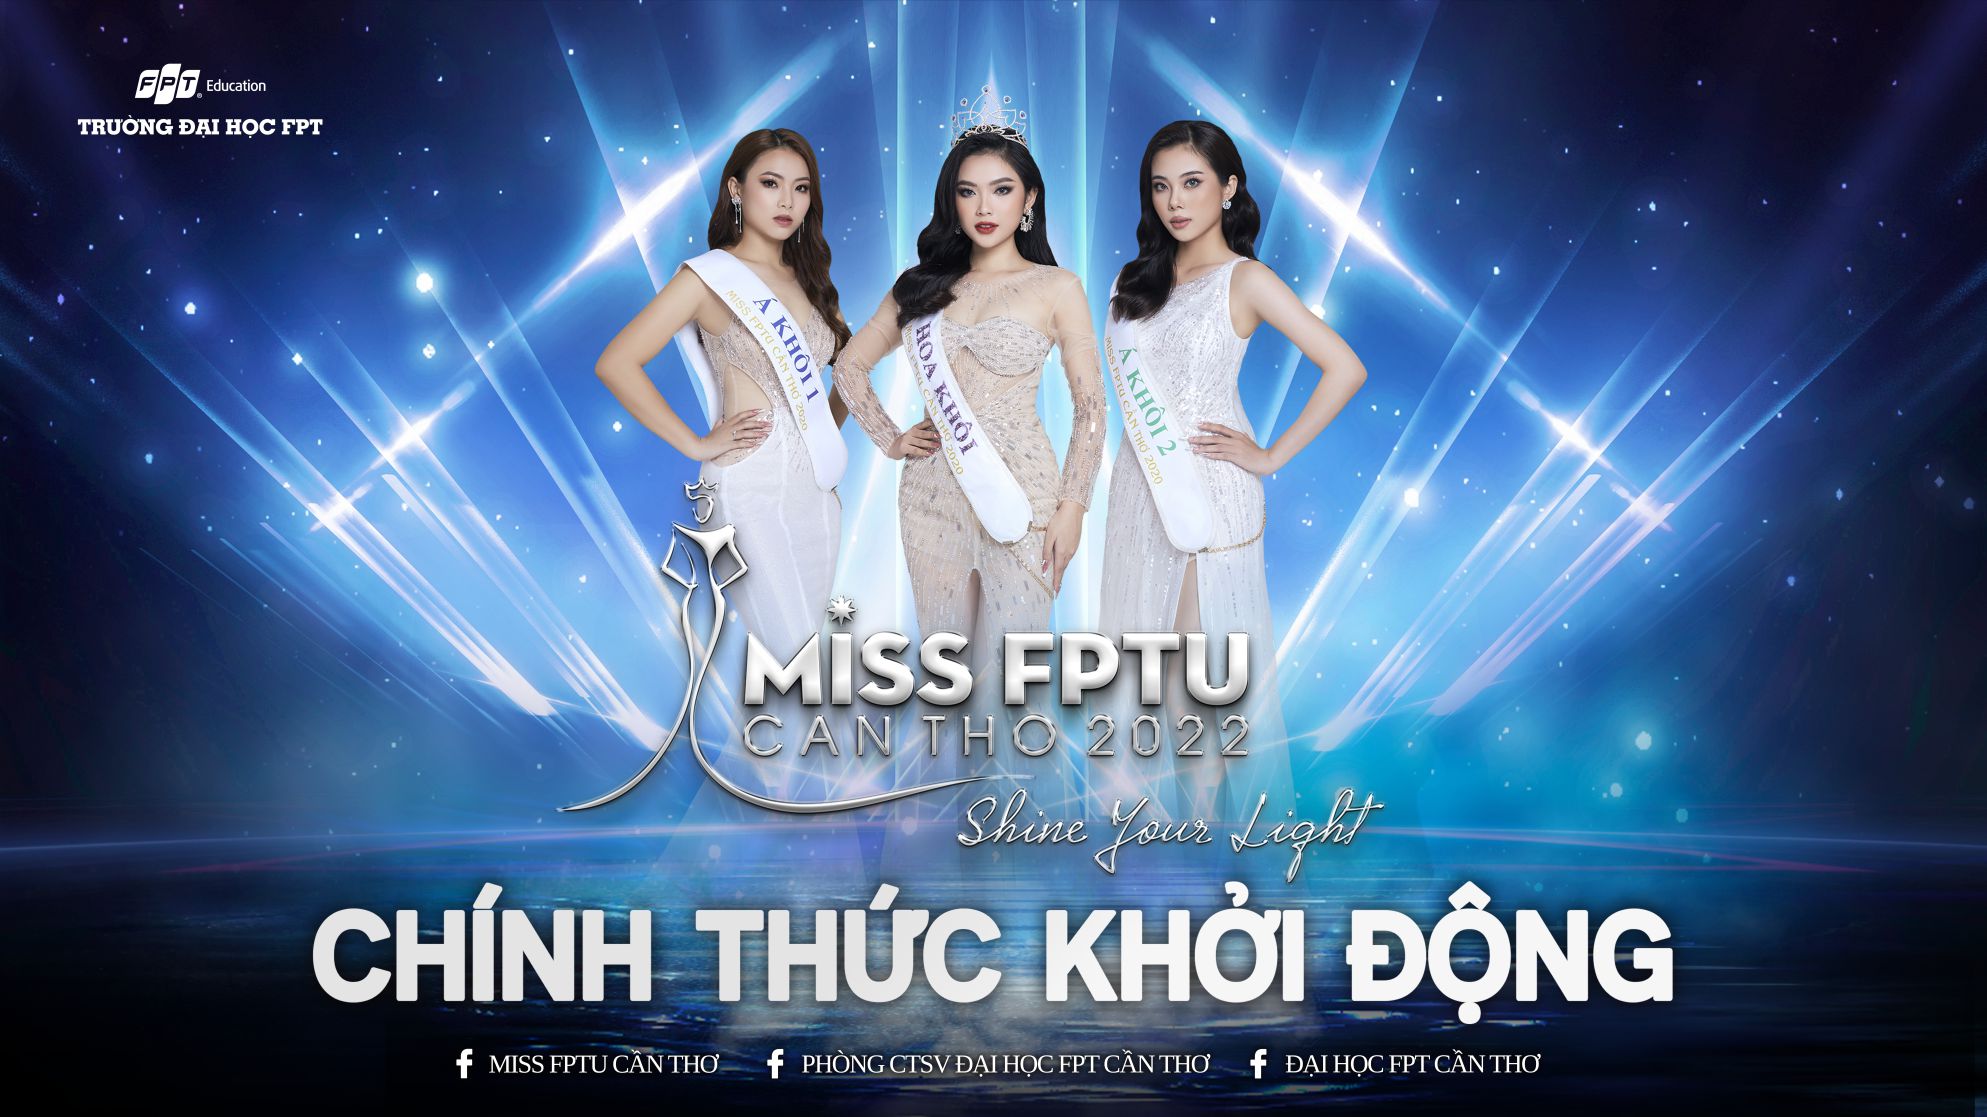 Thể lệ cuộc thi Miss FPTU Cần Thơ 2022